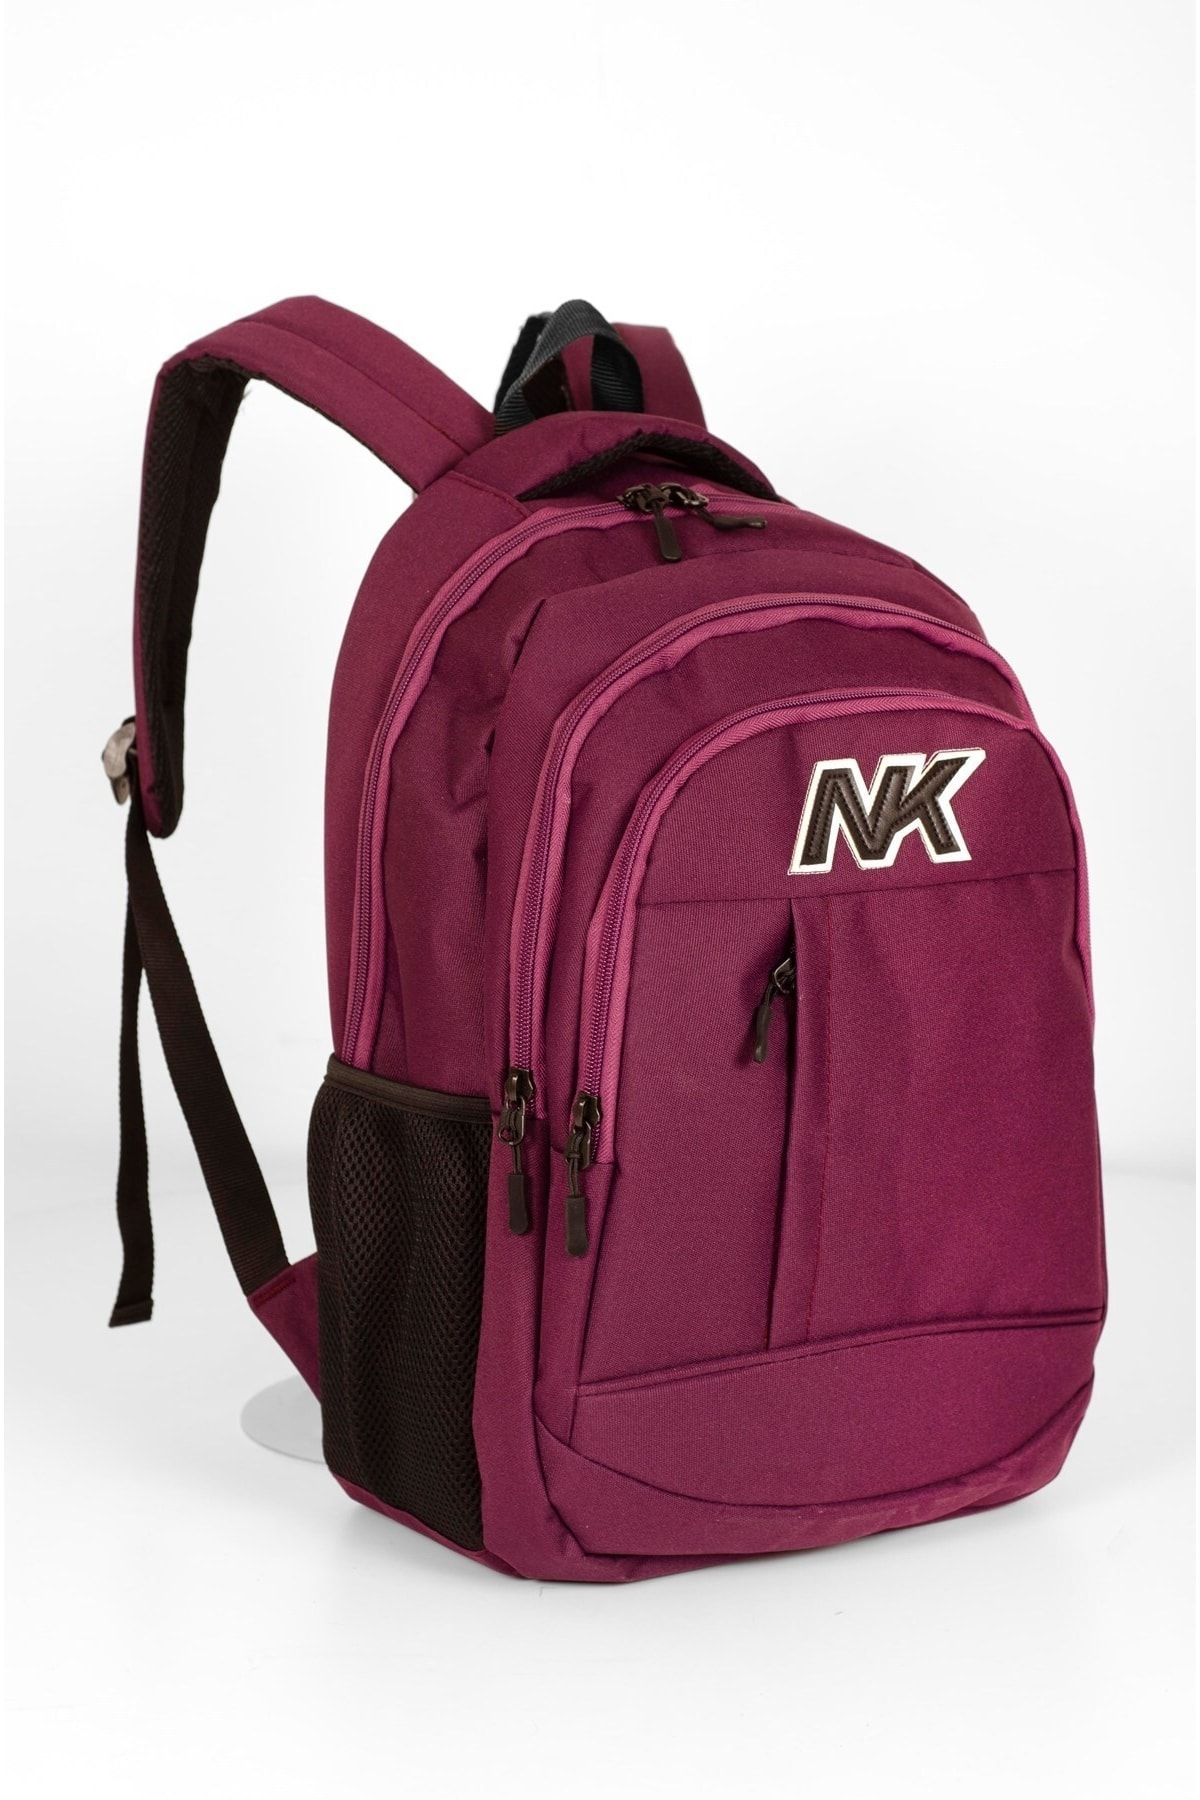 NK Unisex Okul Sırt Çantası 15' Laptop Bölmeli Çanta